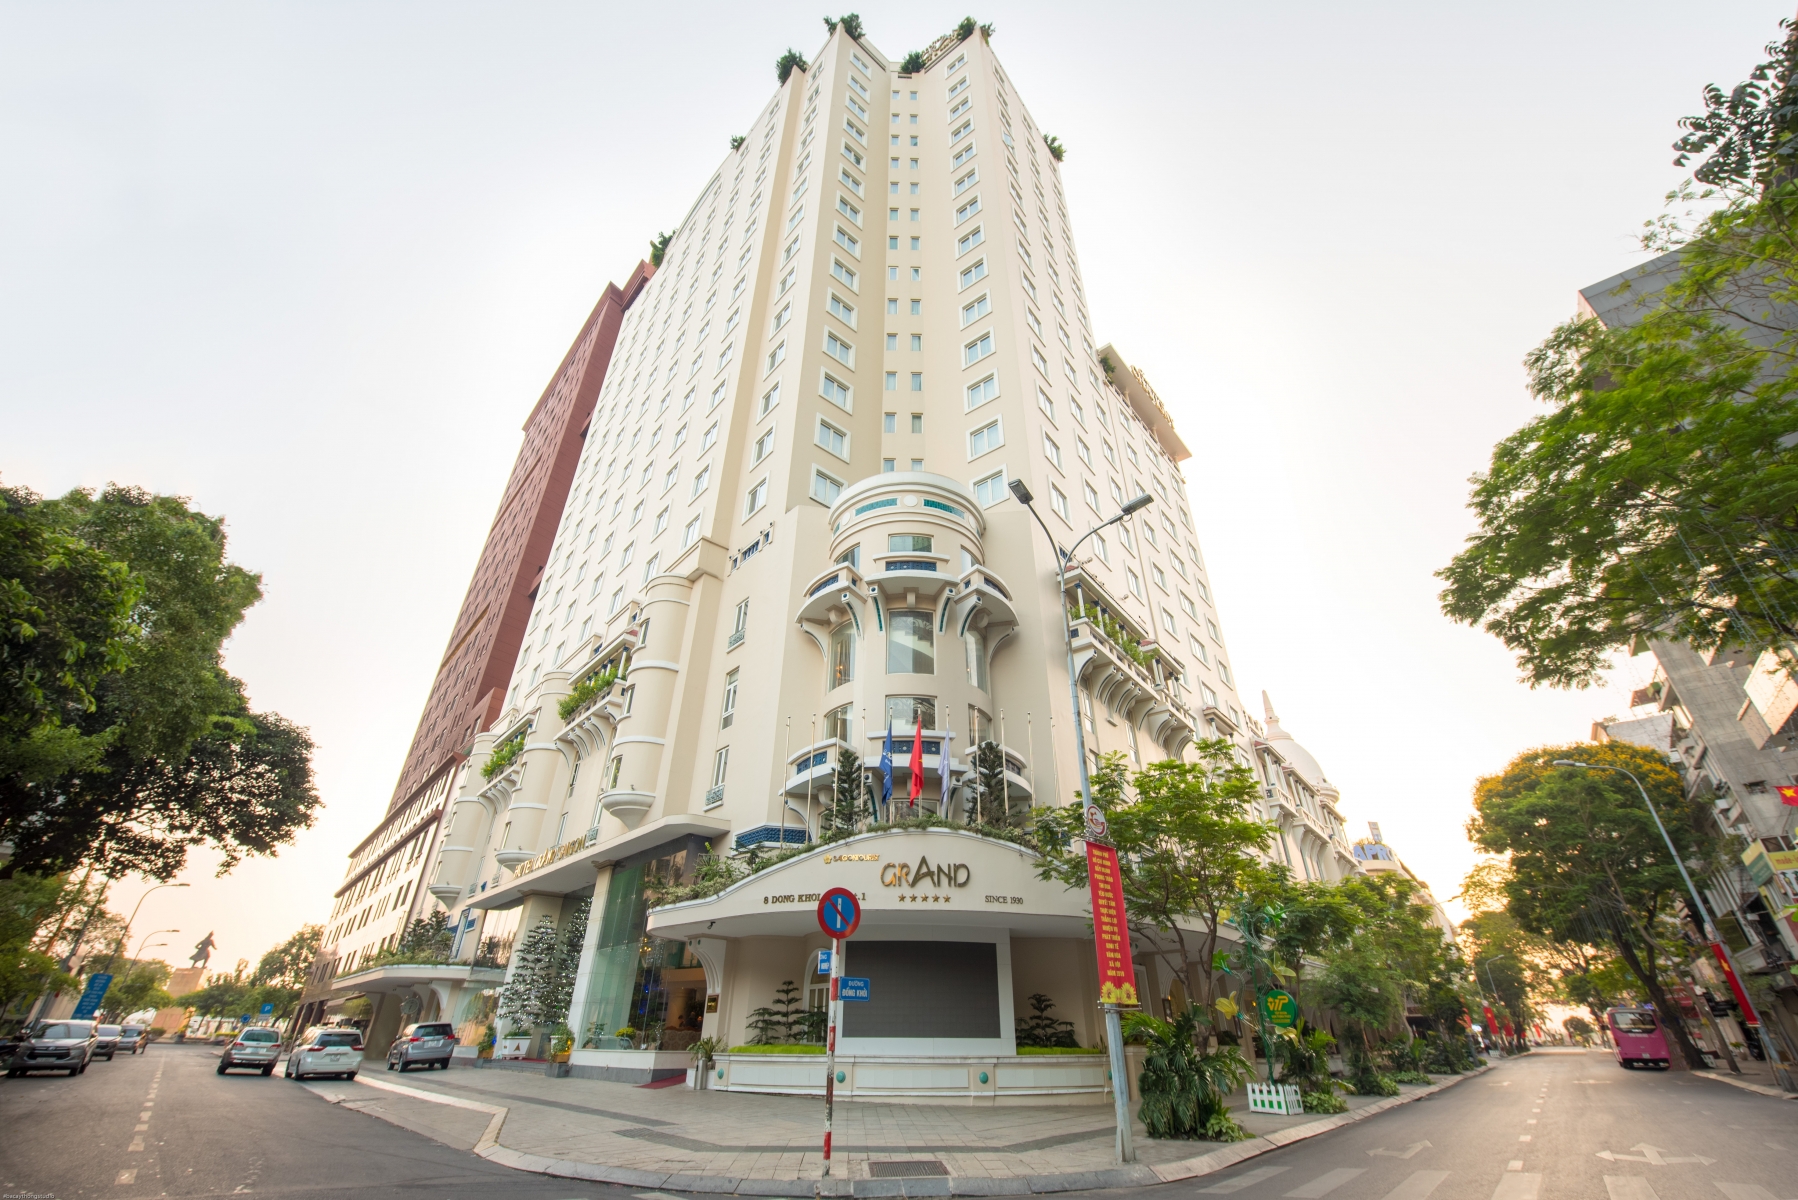 Hàng hiệu xa xỉ, khách sạn 5 sao, thiên đường mua sắm chen nhau trên con đường dát vàng ở Sài Gòn - Ảnh 6.